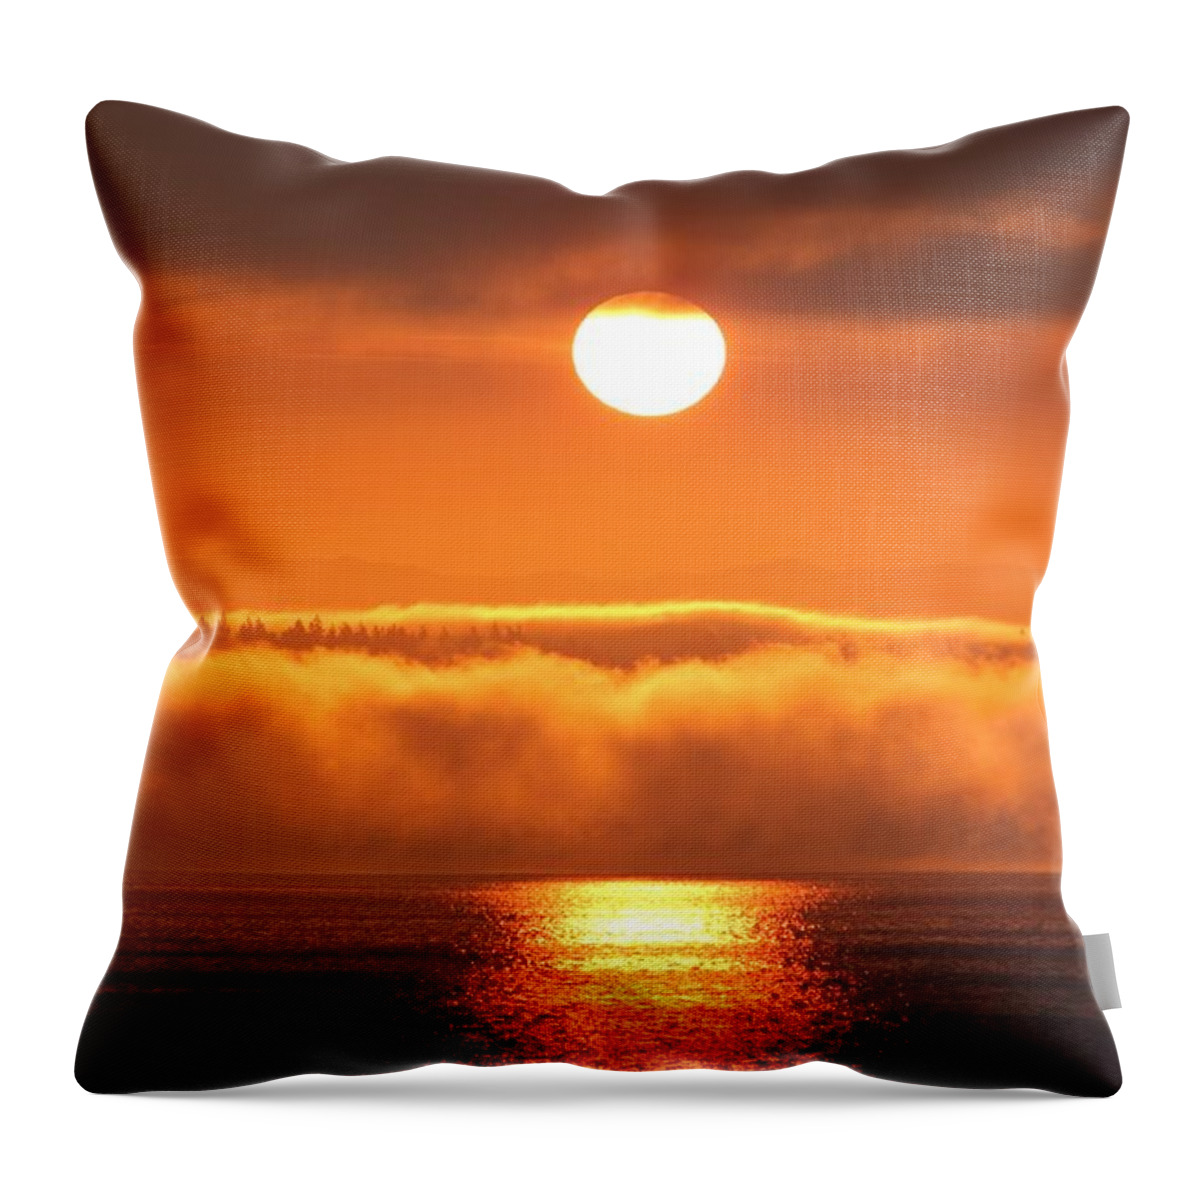 Sunrise Throw Pillow featuring the photograph Sunrise and Fog by E Faithe Lester